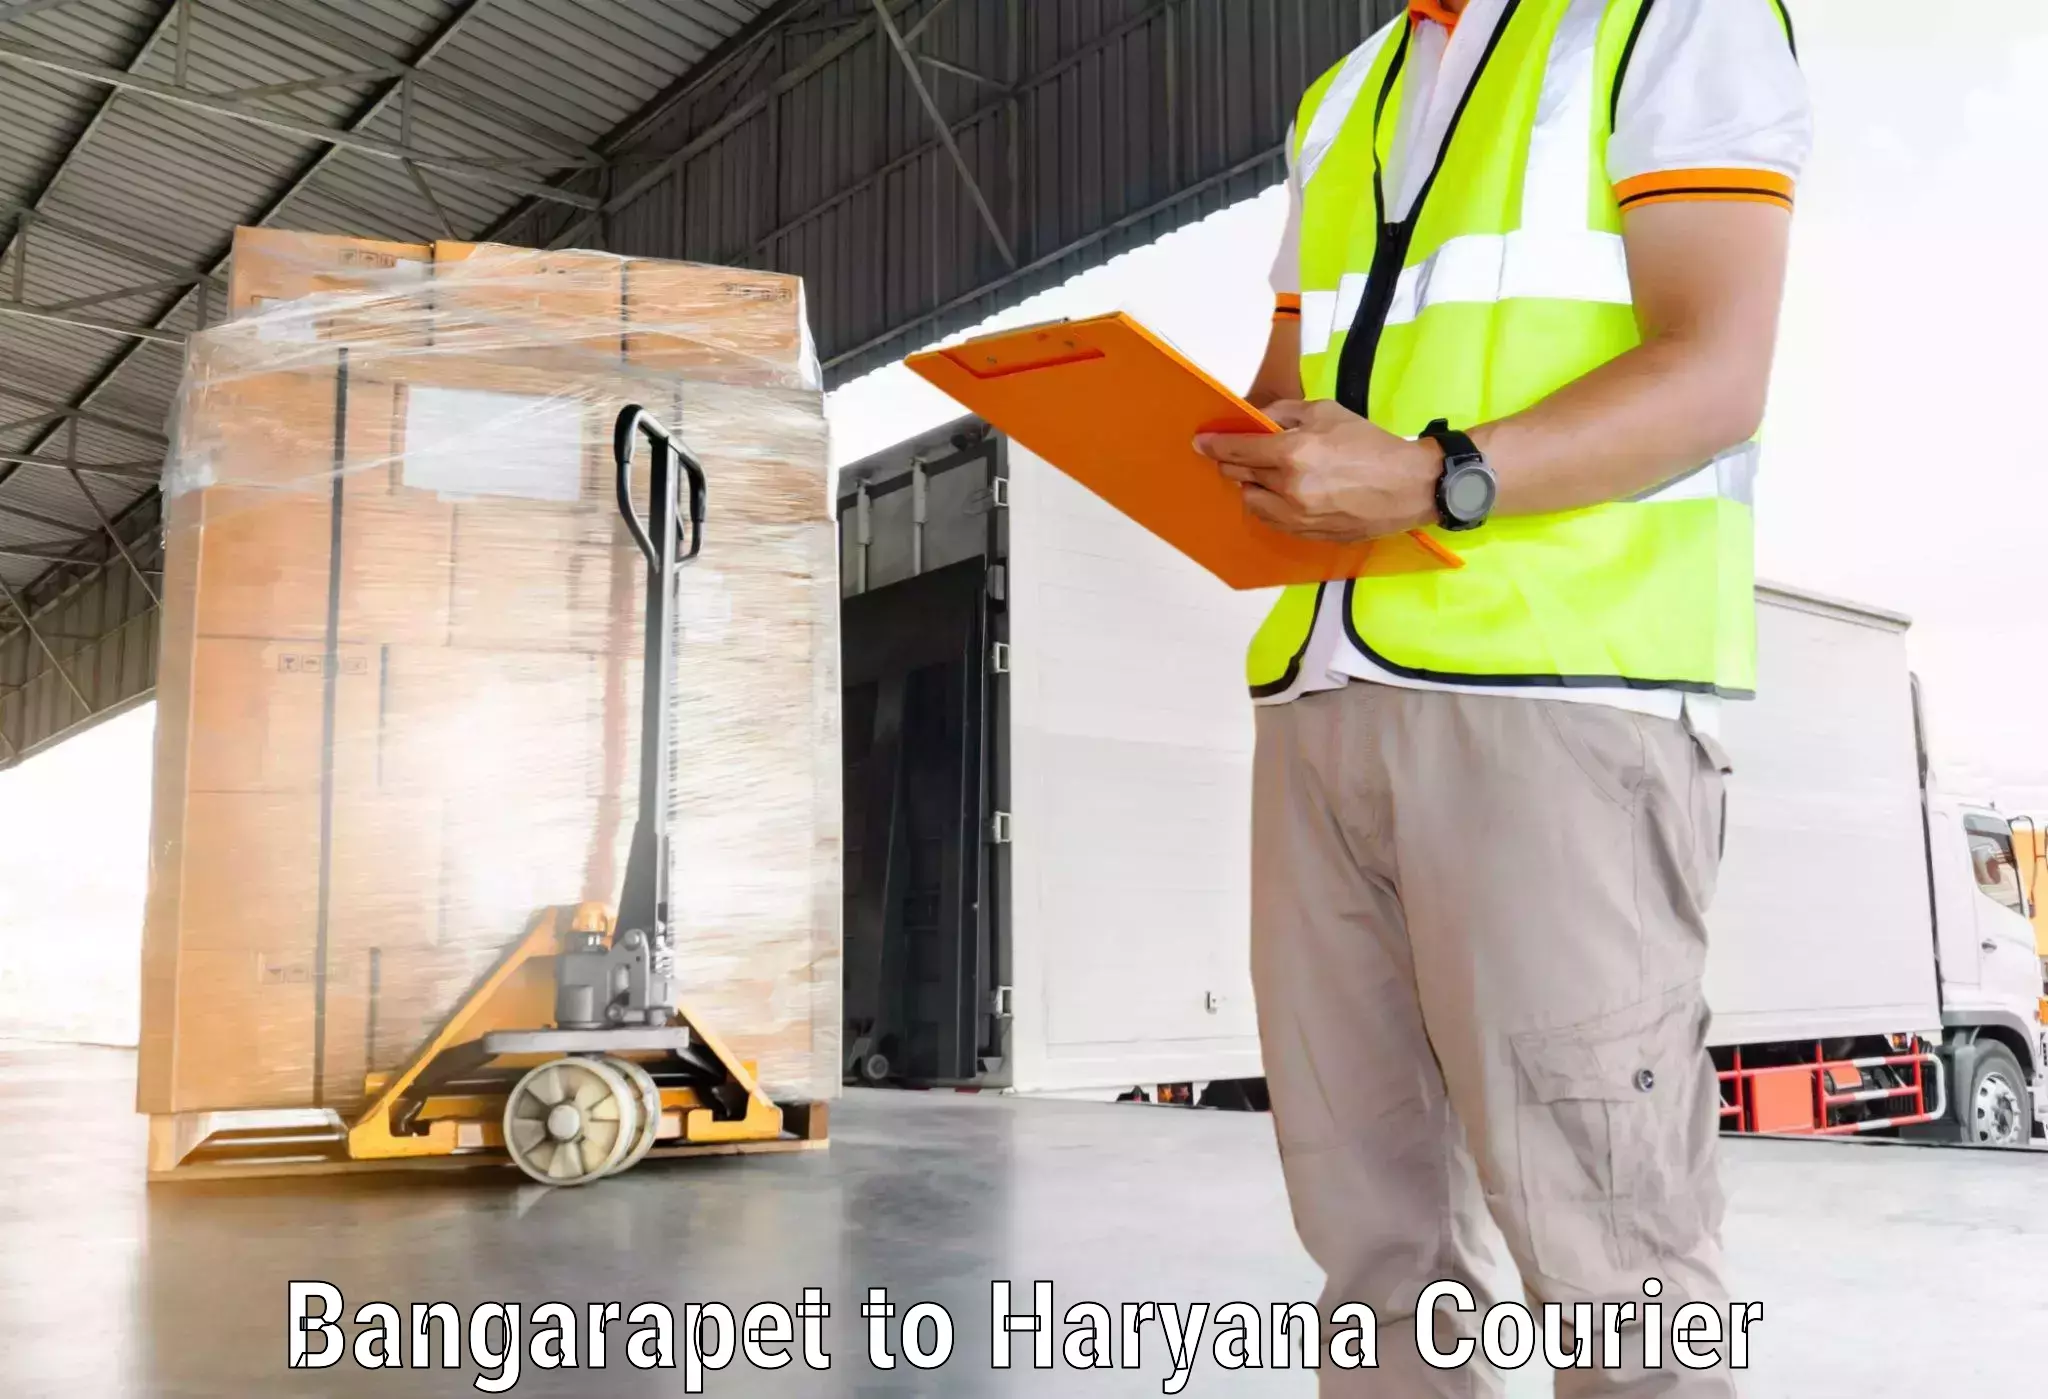 Affordable international shipping Bangarapet to NCR Haryana